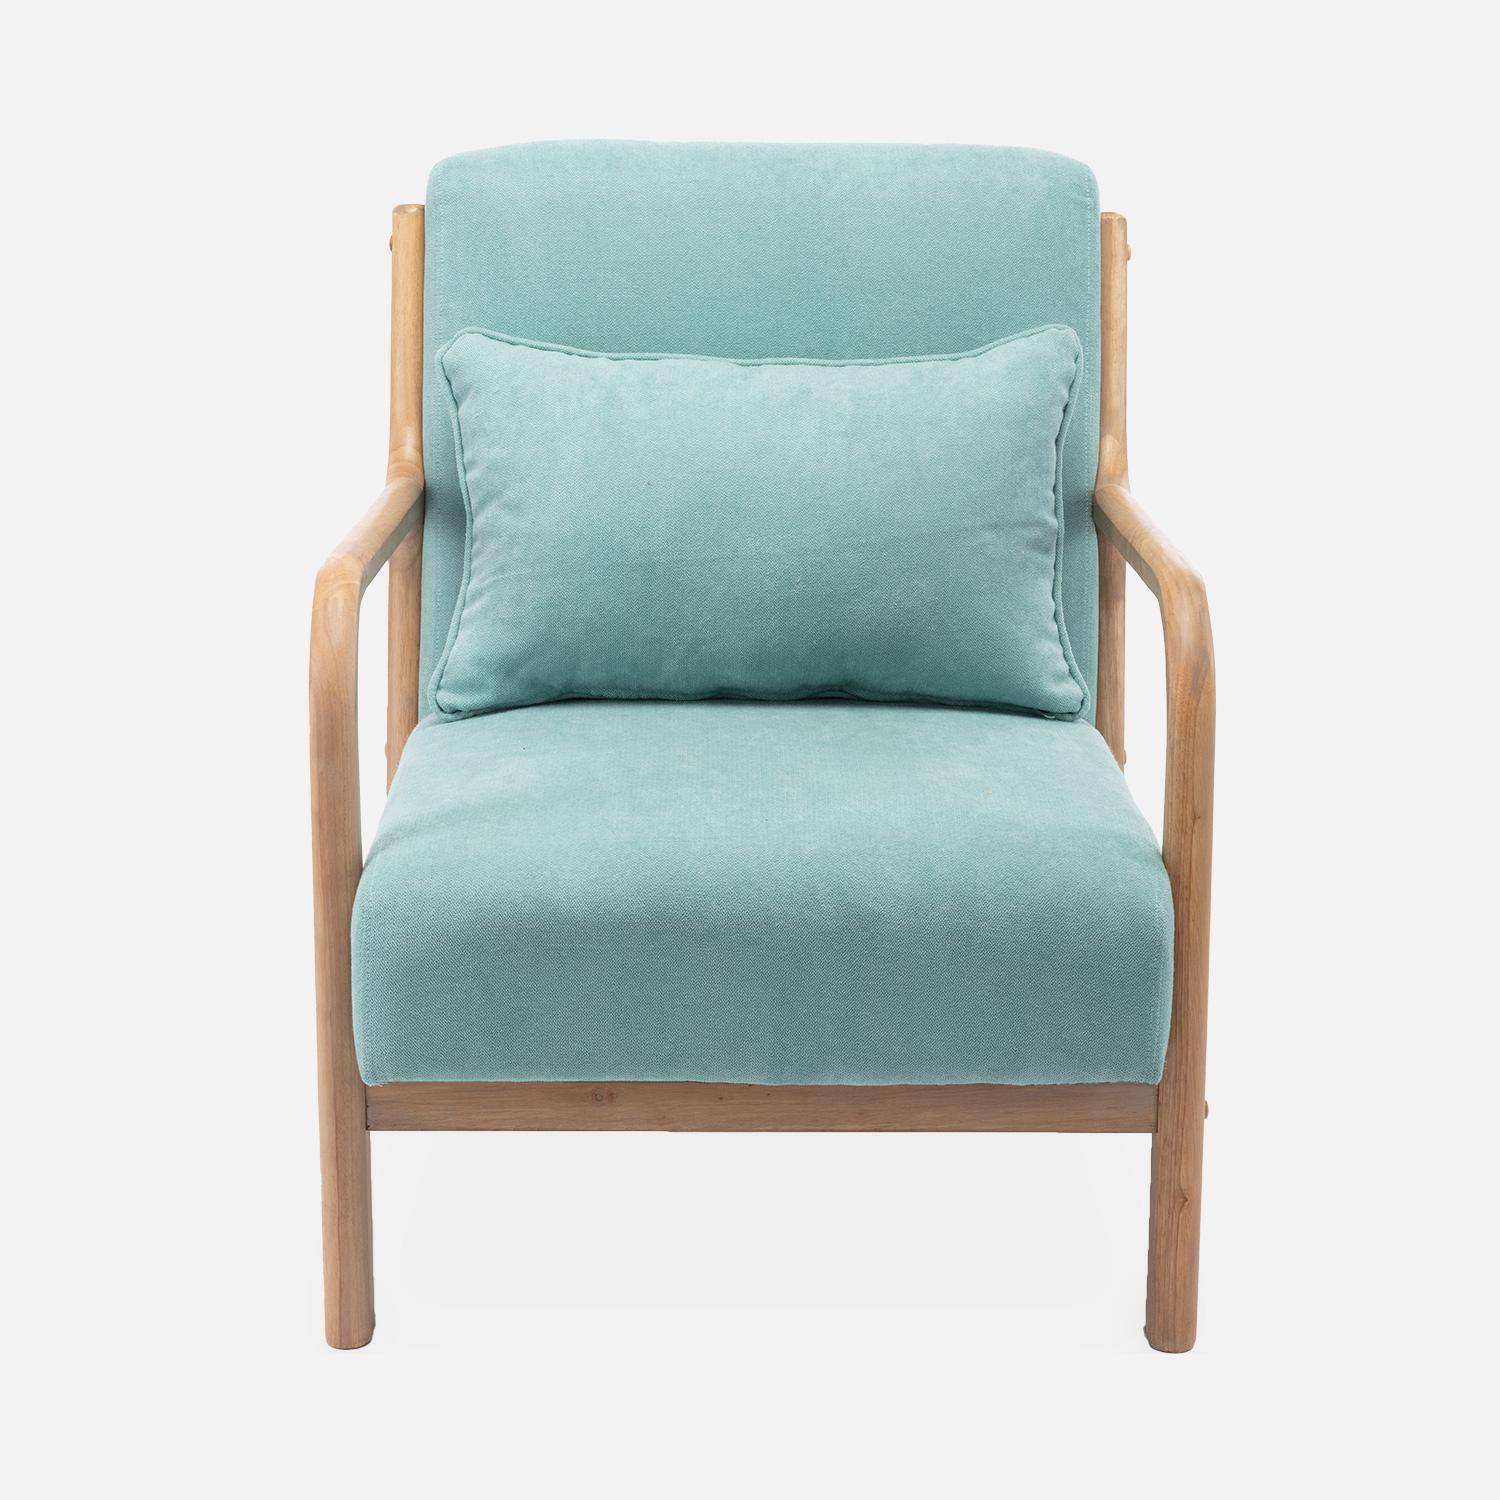 Poltrona de design em madeira e tecido, 1 assento reto fixo, pernas de bússola escandinavas, verde água Photo4